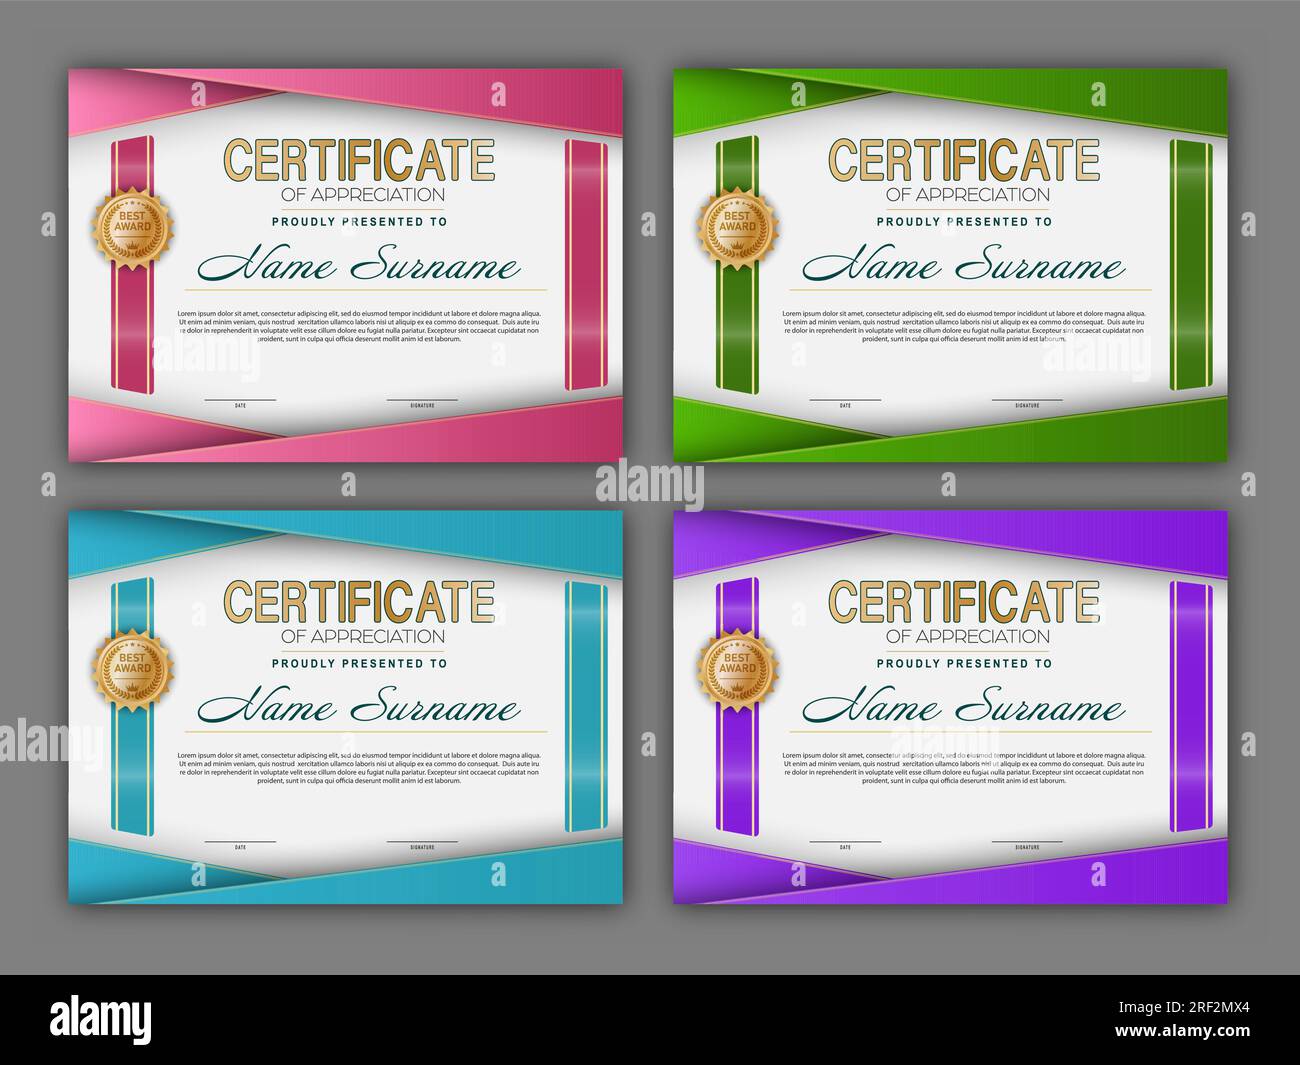 Certificato. Una serie di mock-up del certificato di riconoscimento dell'istruzione, della formazione, dei risultati. Design a quattro colori Illustrazione Vettoriale